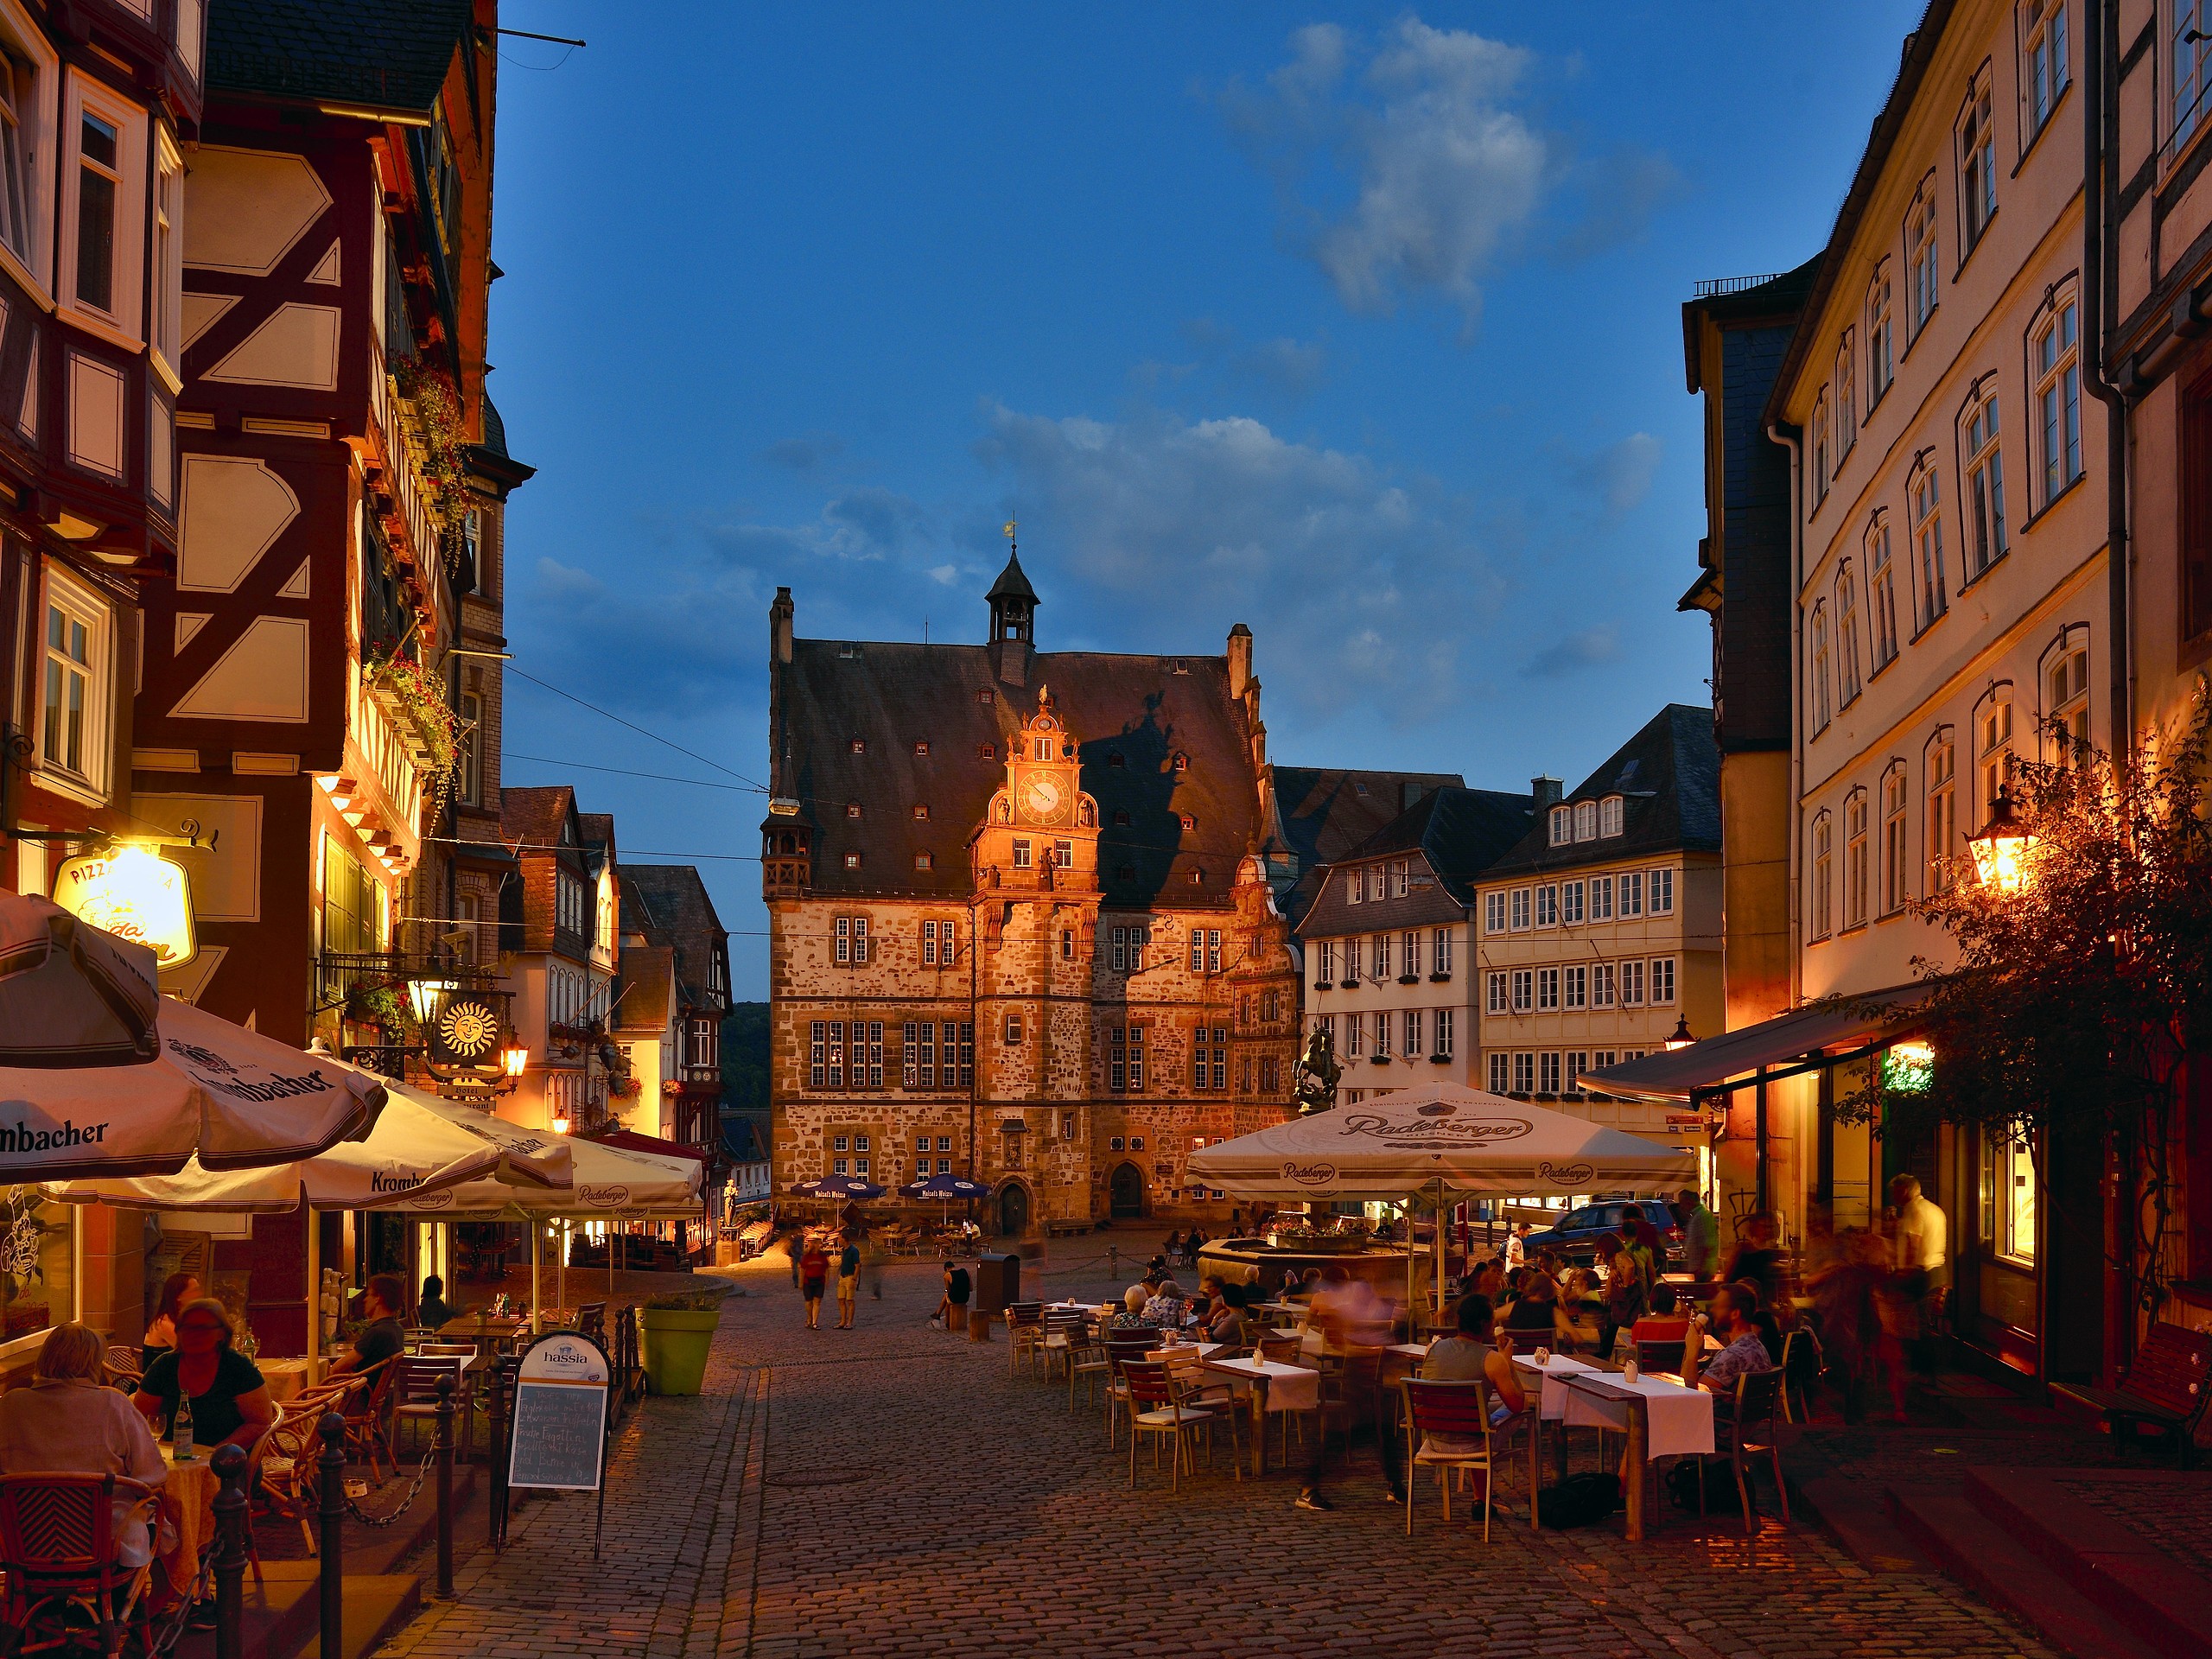 Der Marktplatz in Marburg in der Abenddämmerung